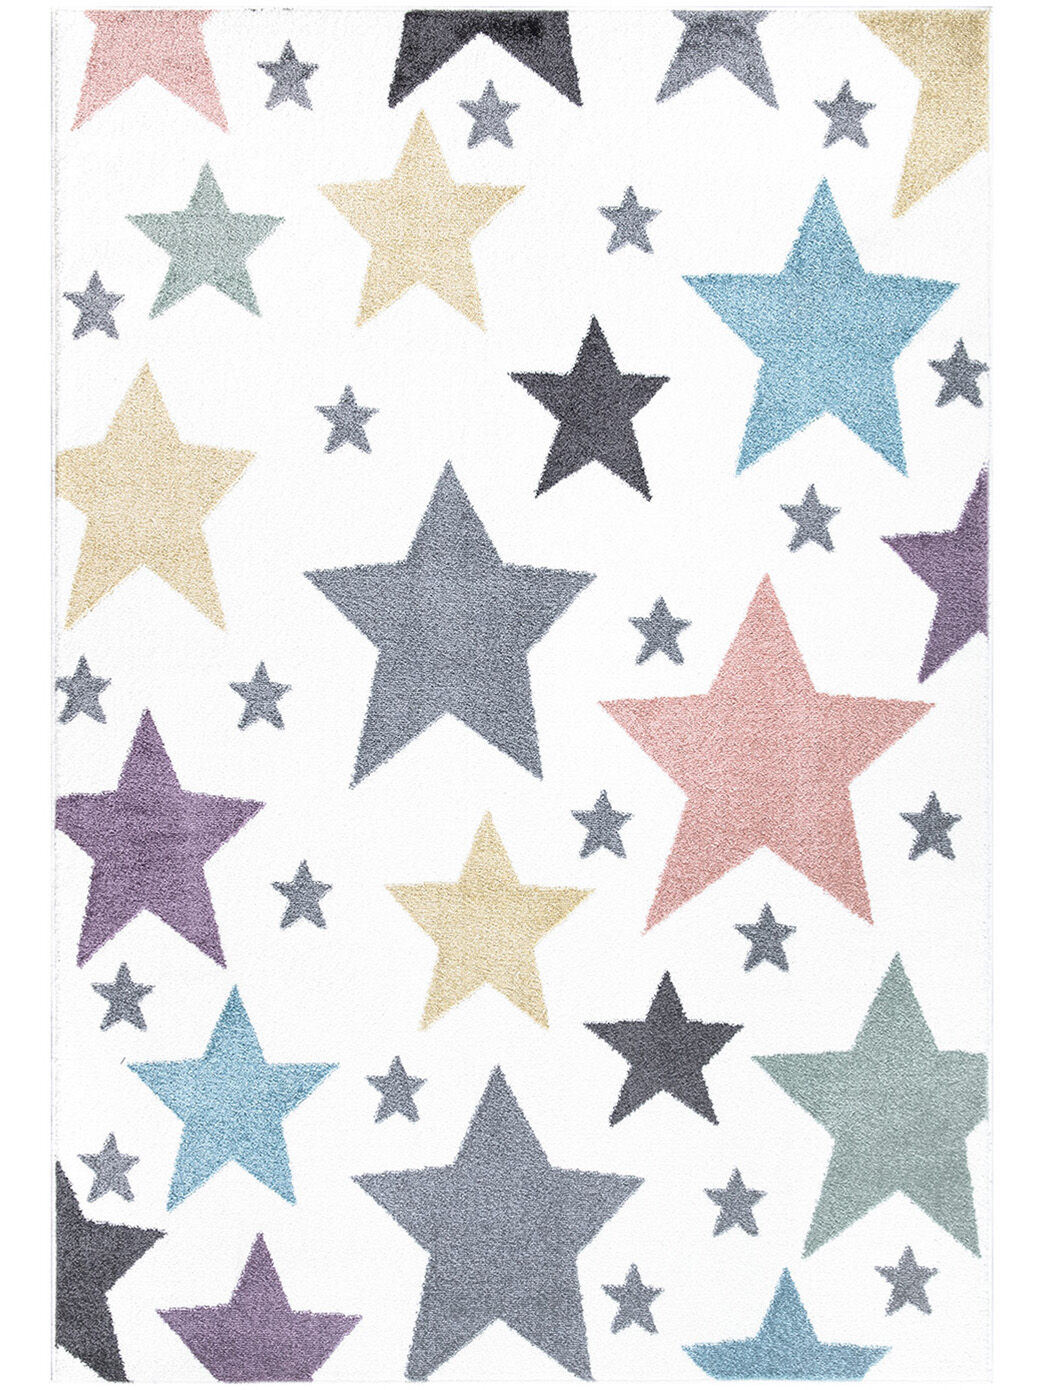 Kinderteppich Sterne Bunt 160x230 1